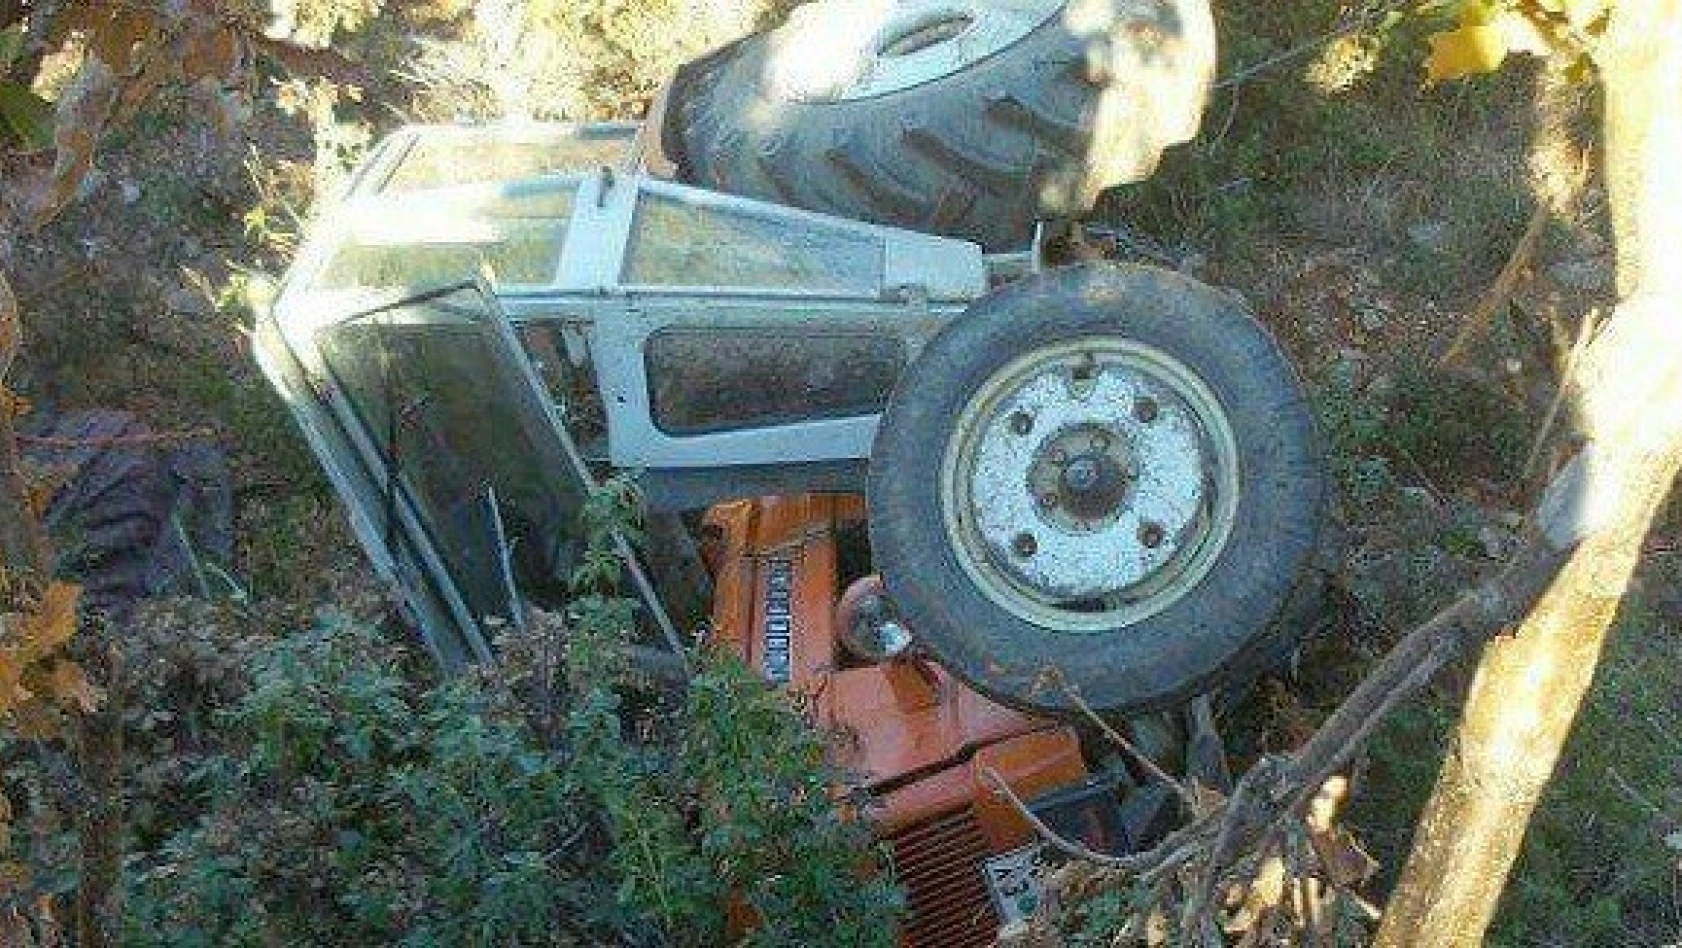 Traktör şarampole devrildi: 1 ölü, 1 yaralı